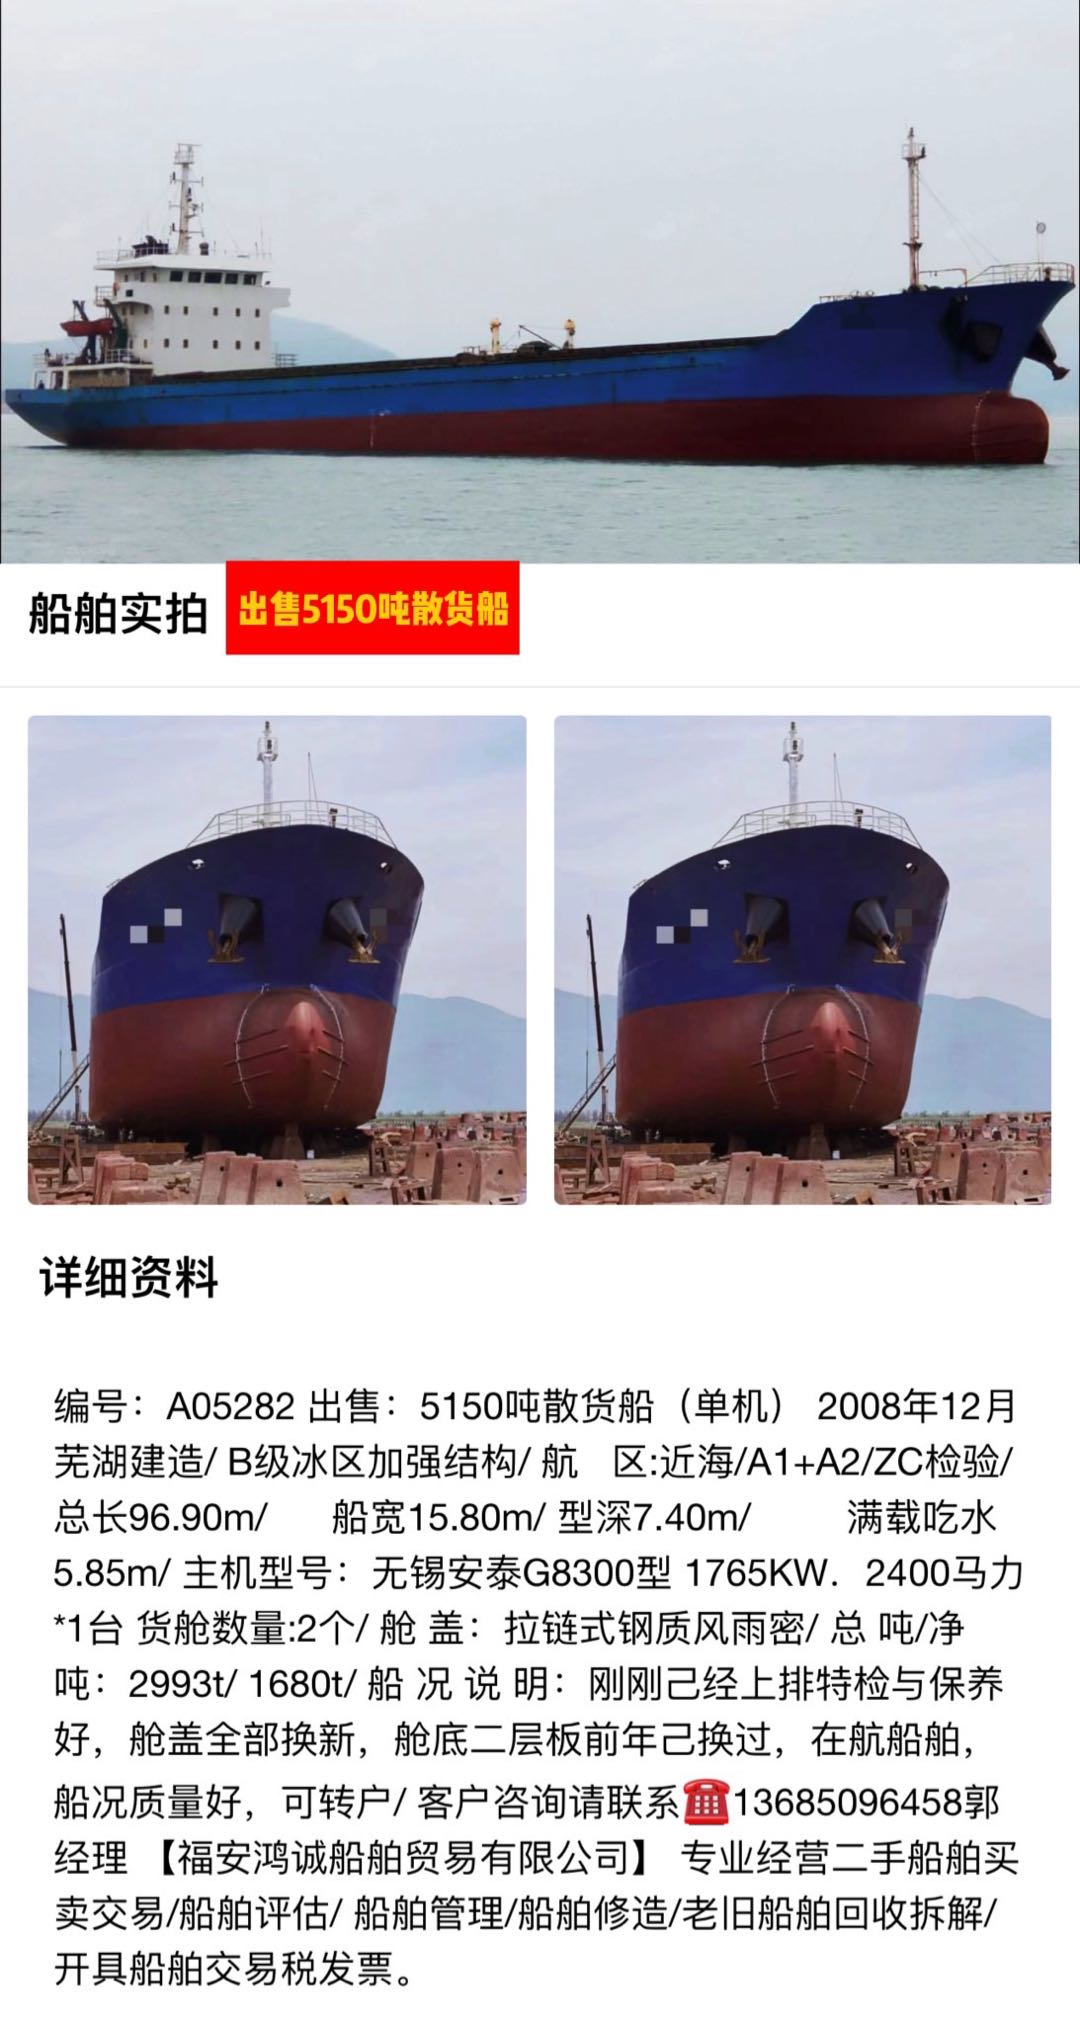 出卖：5150吨正在航集货船 2008年12月安徽芜湖制作/ 祸建 宁德市-2.jpg